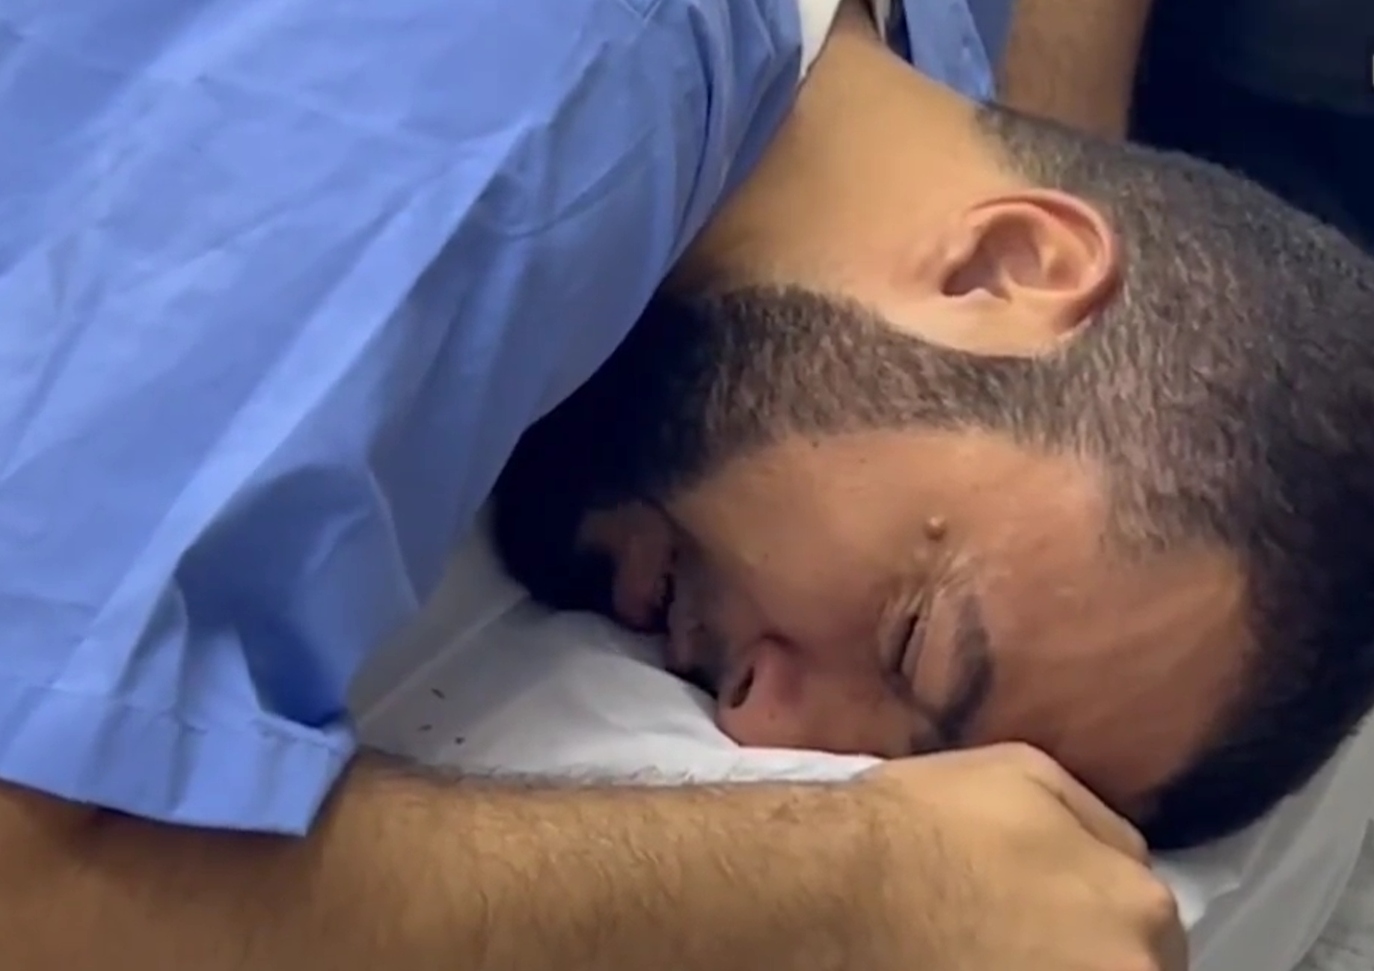 Μέση Ανατολή: Η συγκλονιστική στιγμή που γιατρός σε νοσοκομείο αντικρίζει τις σορούς μελών της οικογένειάς του